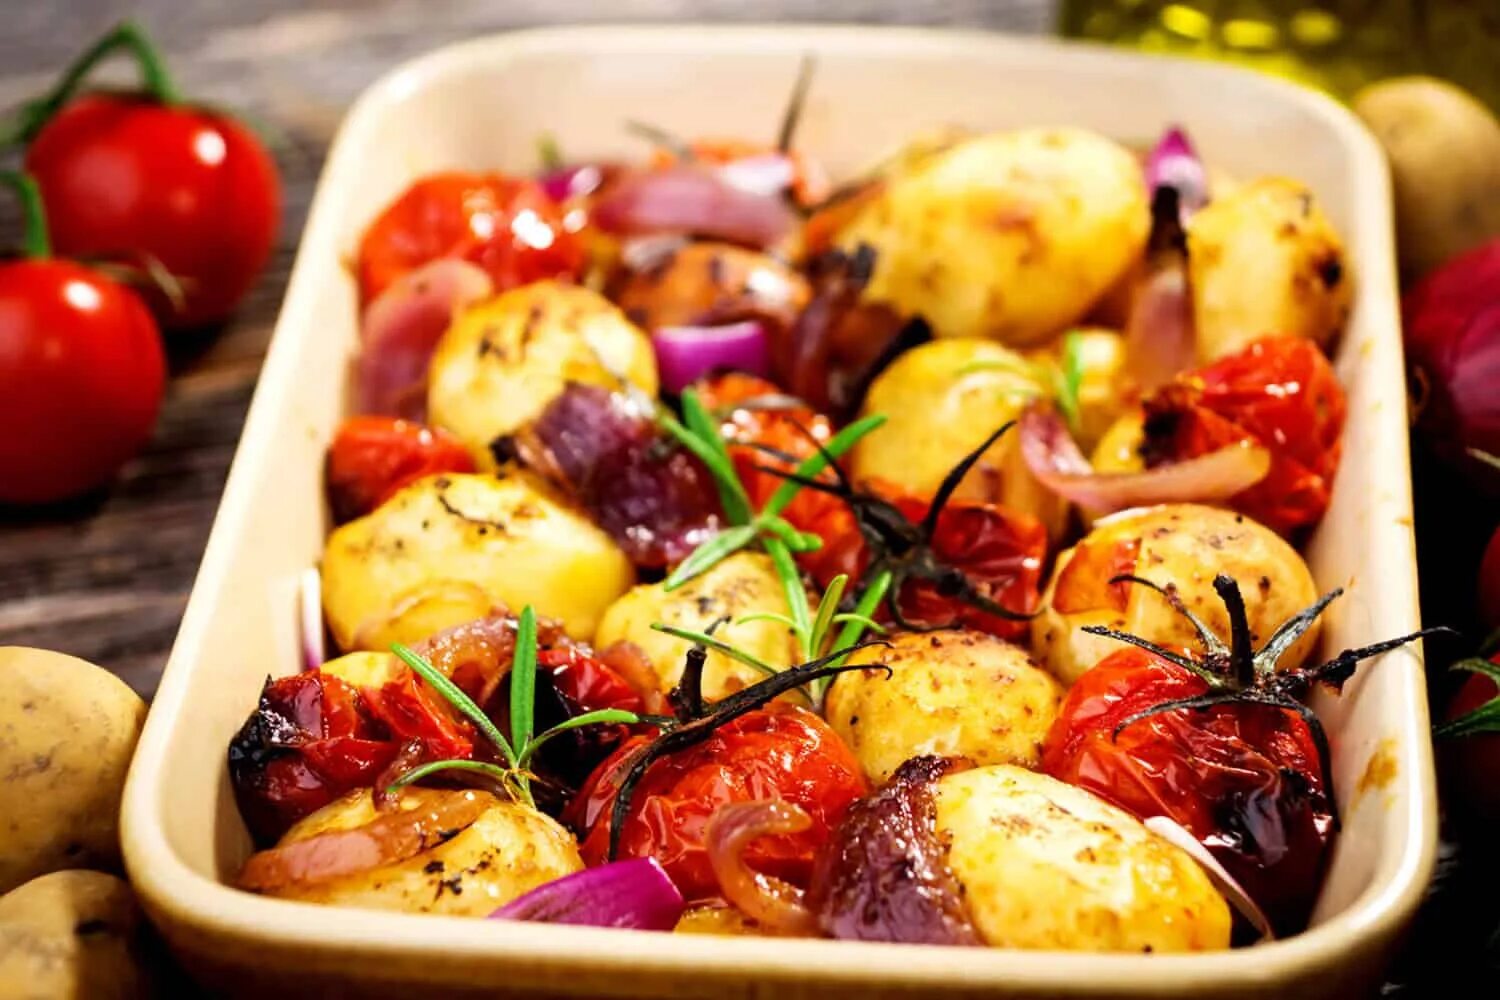 Tomato and onion and. Картофель черри с розмарином. Печеные овощи. Овощи в духовке. Печеная картошка в духовке с овощами.